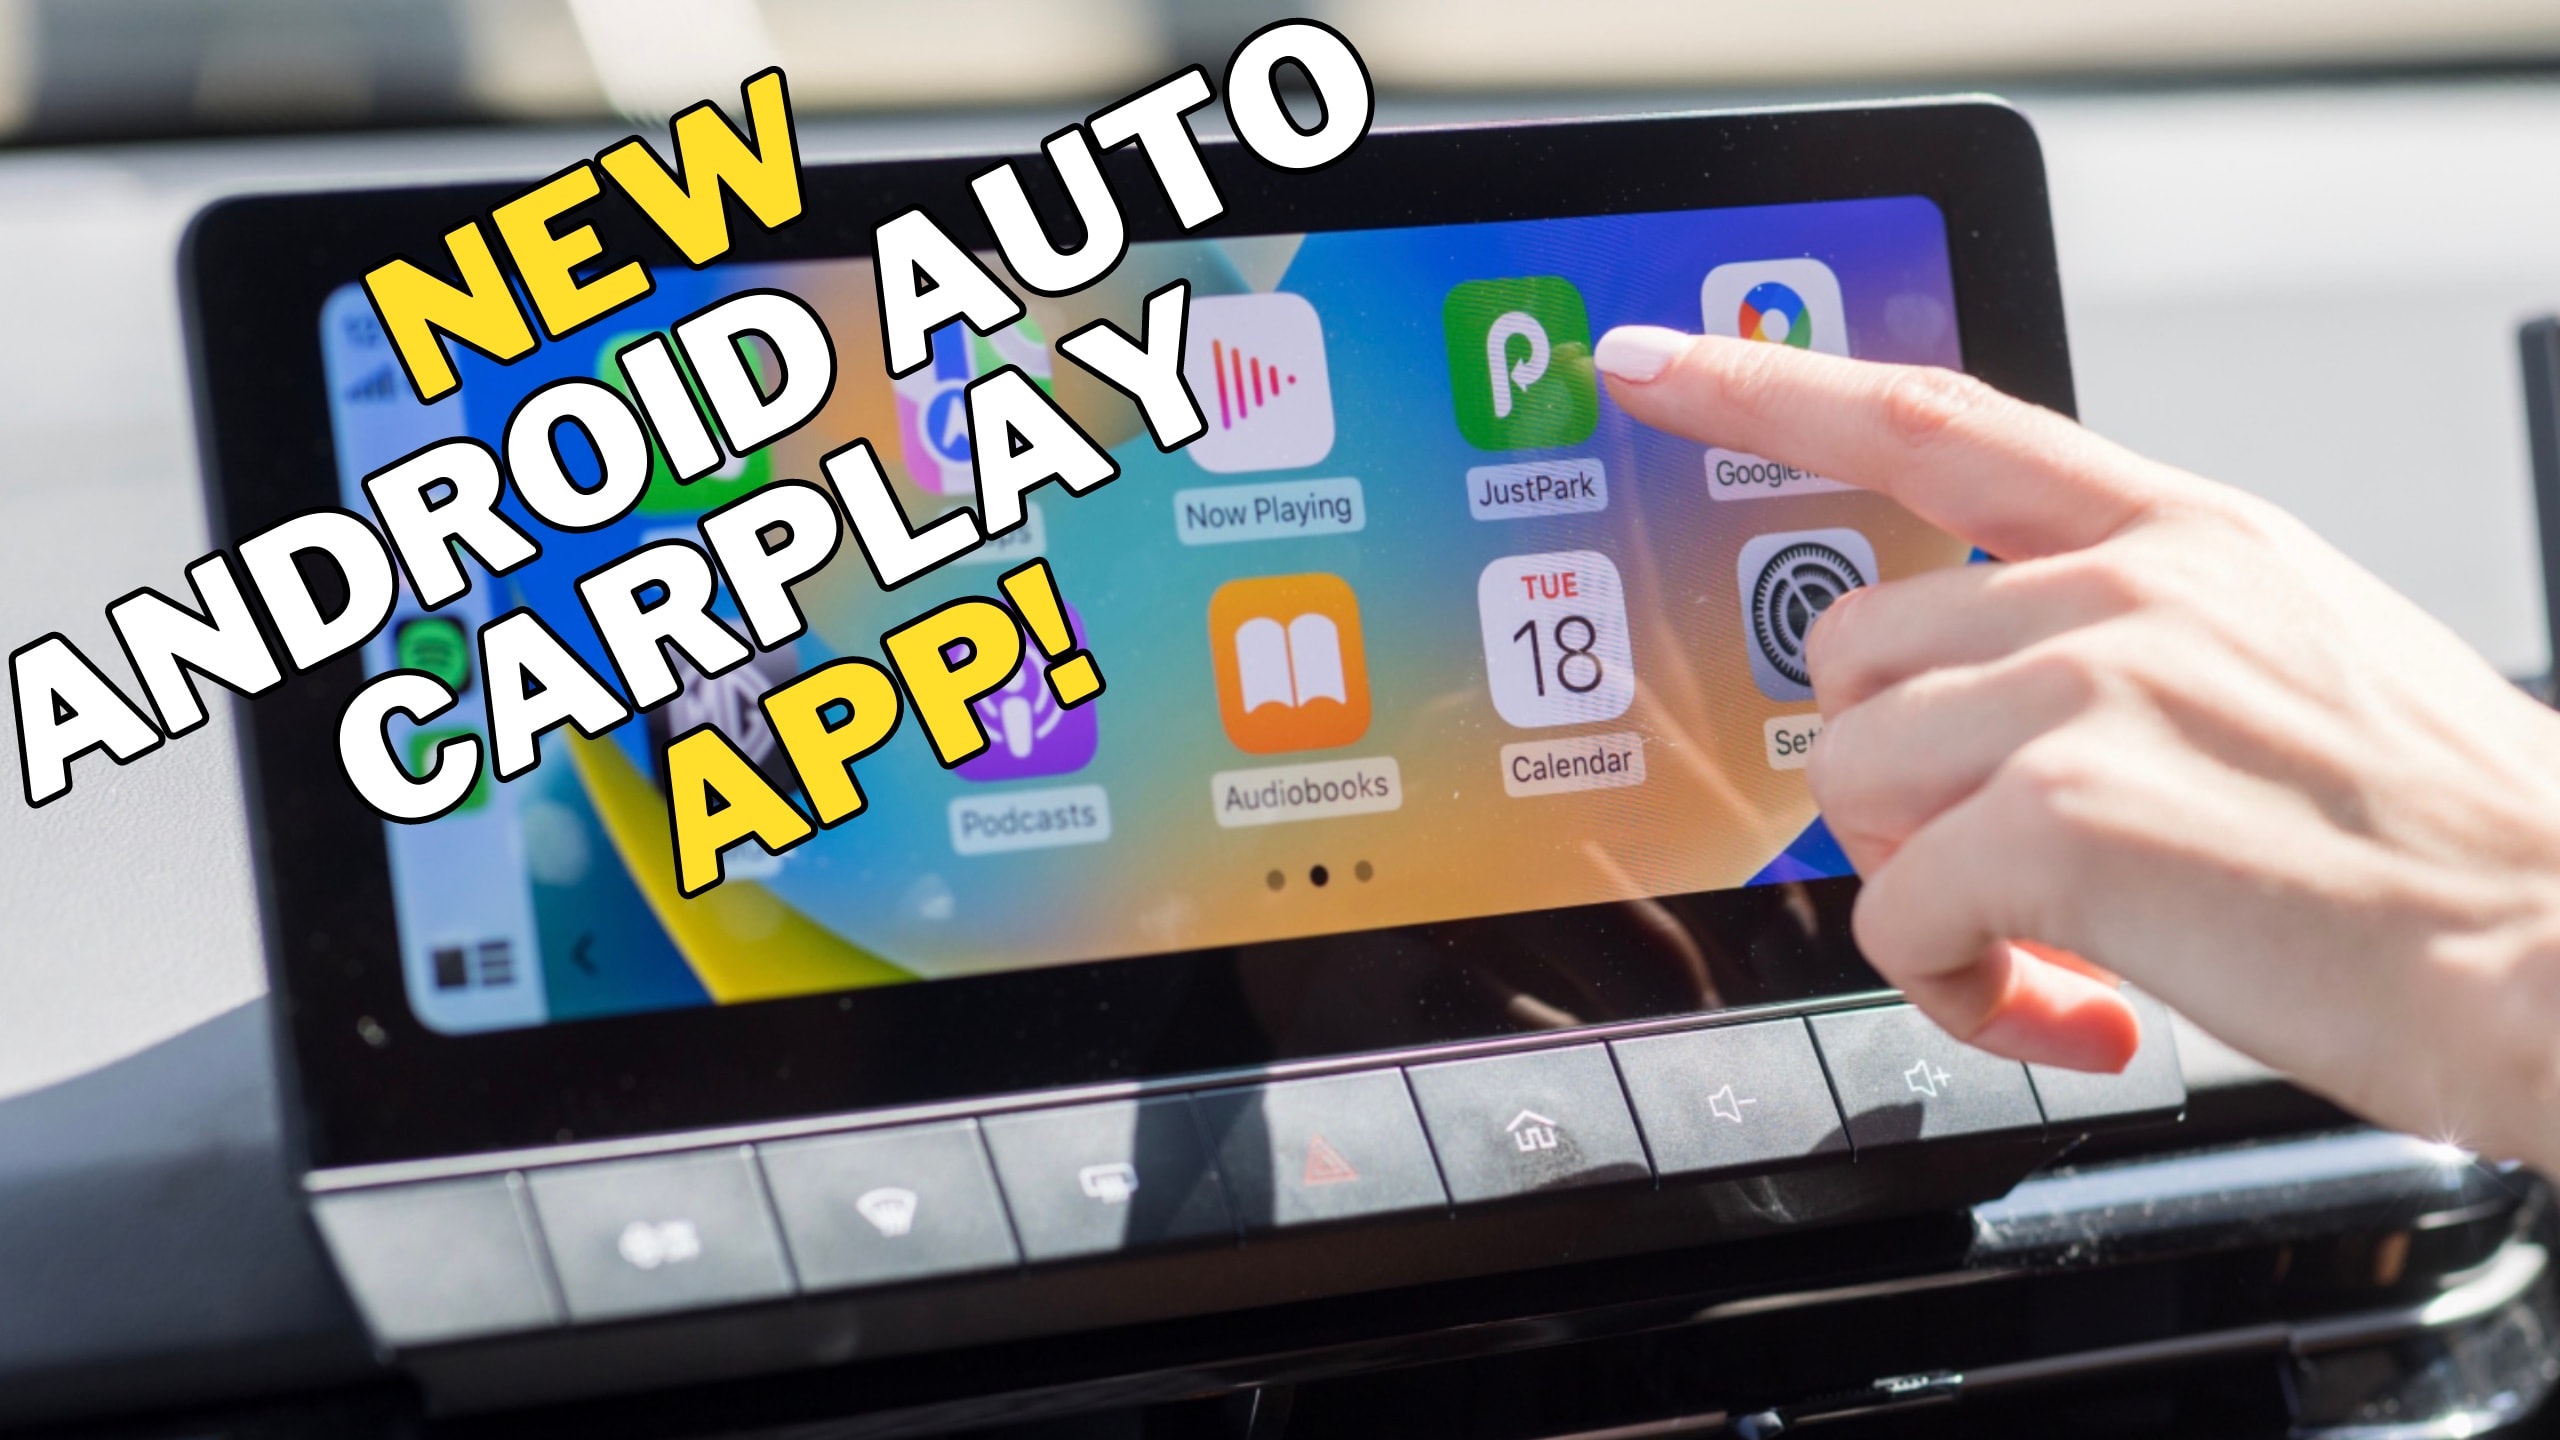 Car play – Apps on Google Play